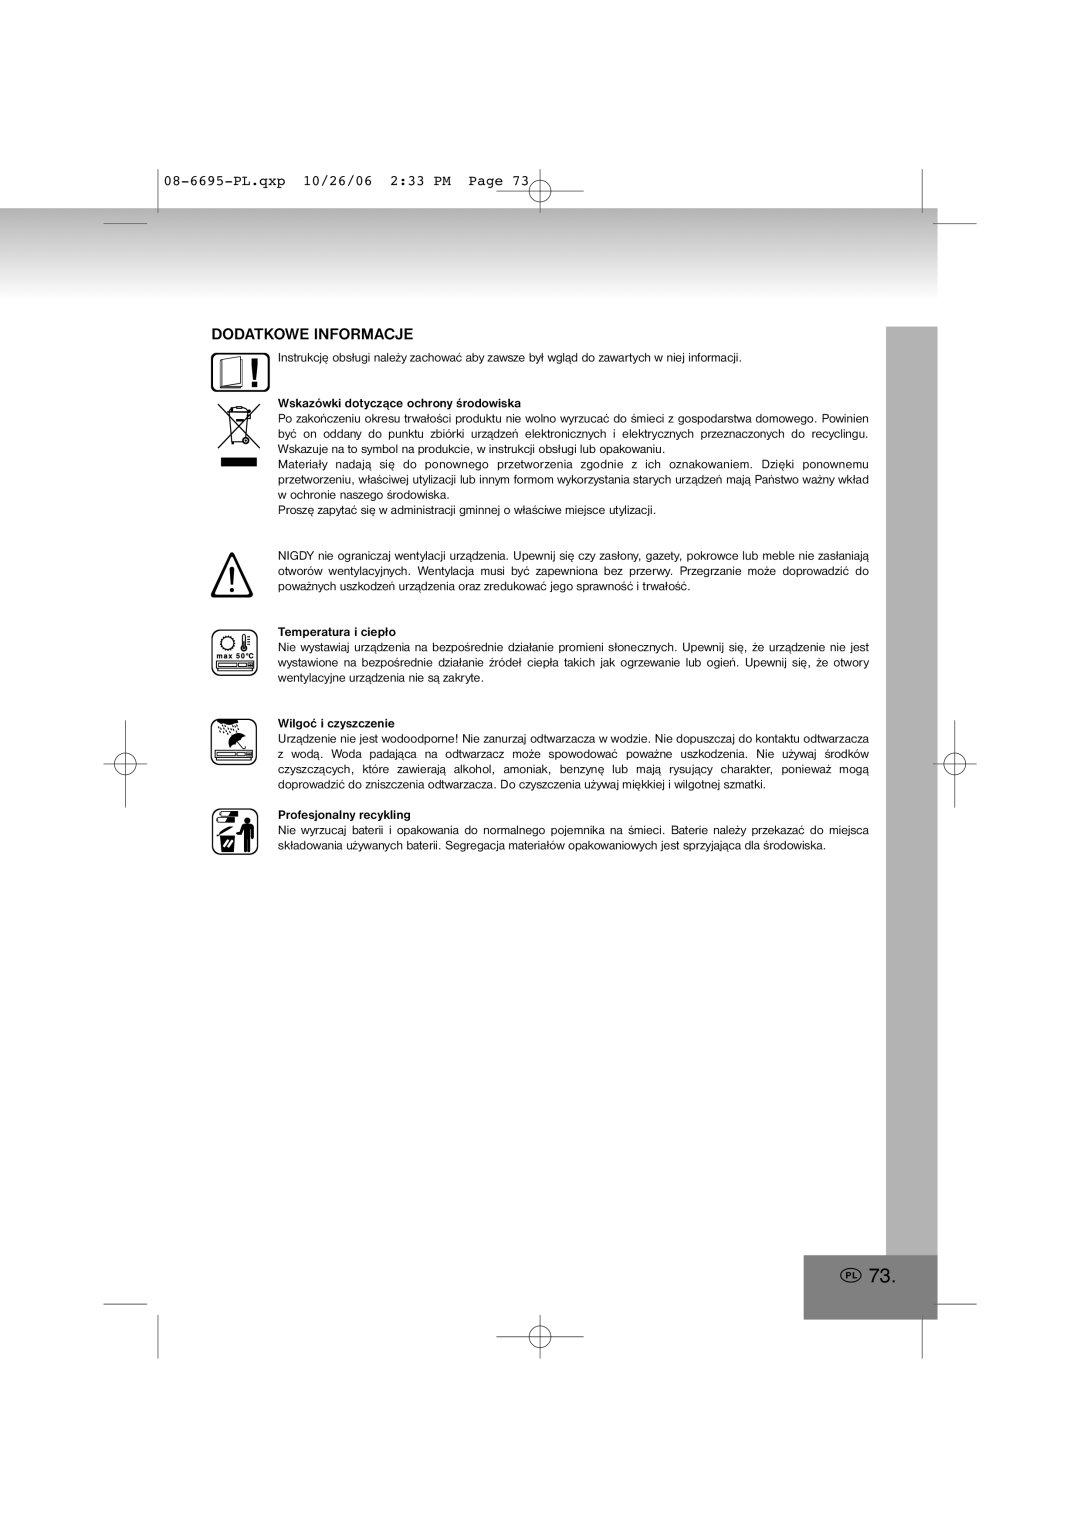 Elta manual Dodatkowe Informacje, 08-6695-PL.qxp10/26/06 2 33 PM Page, Wskazówki dotyczące ochrony środowiska 